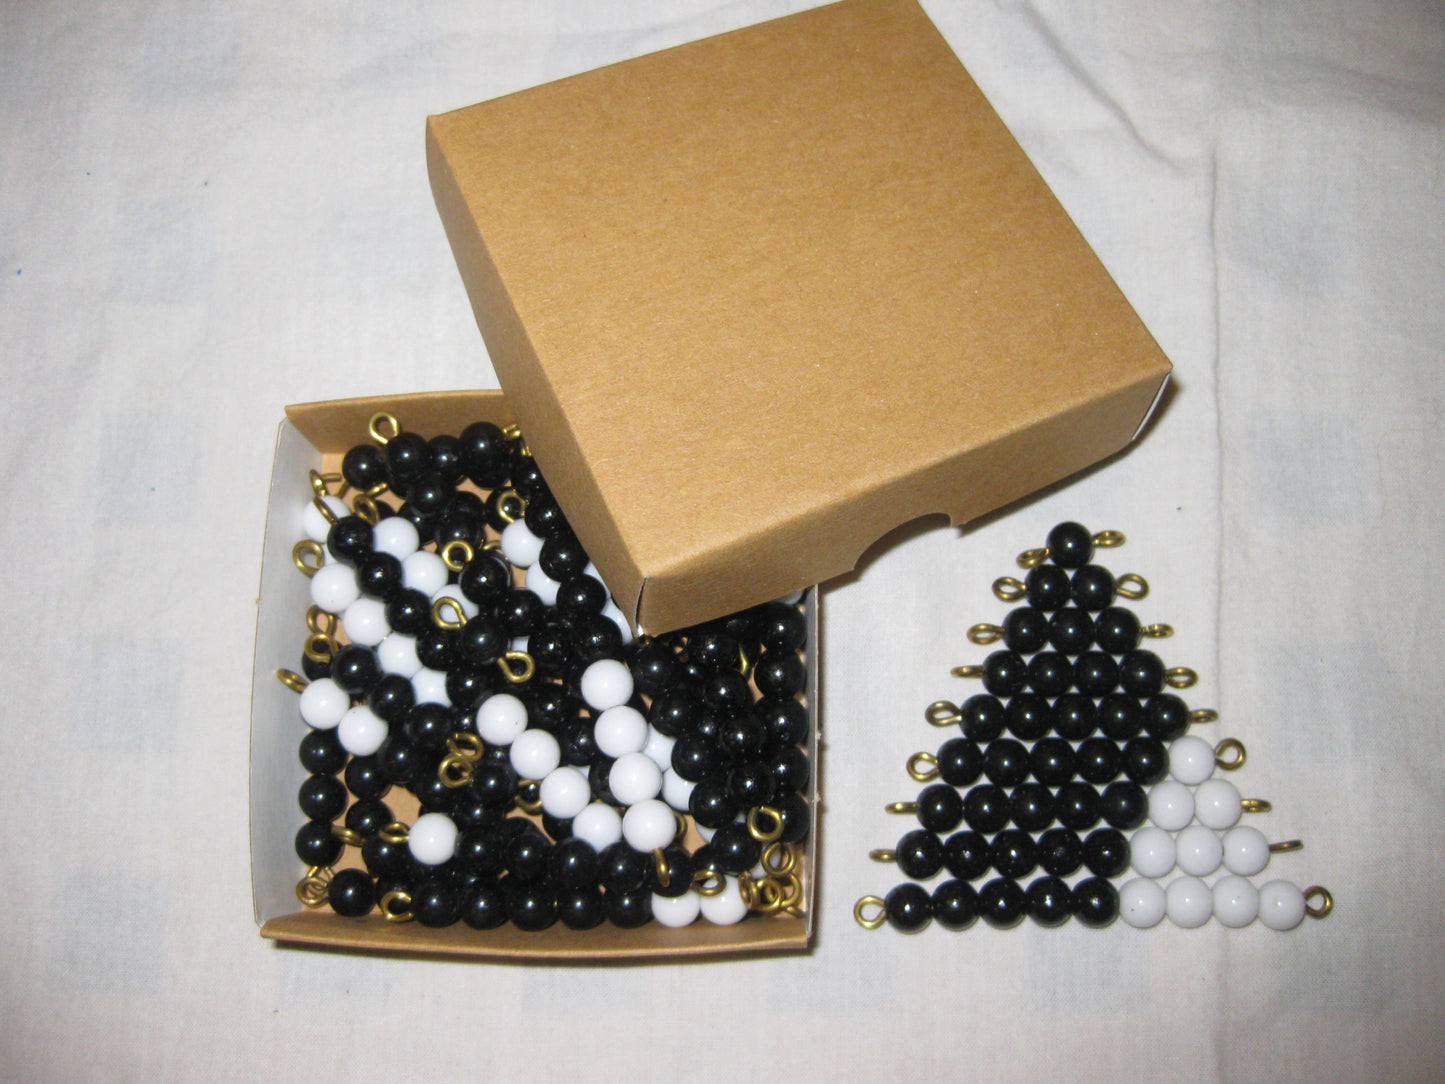 Pärlstavar svart/vita 1-9 rörliga pärlor